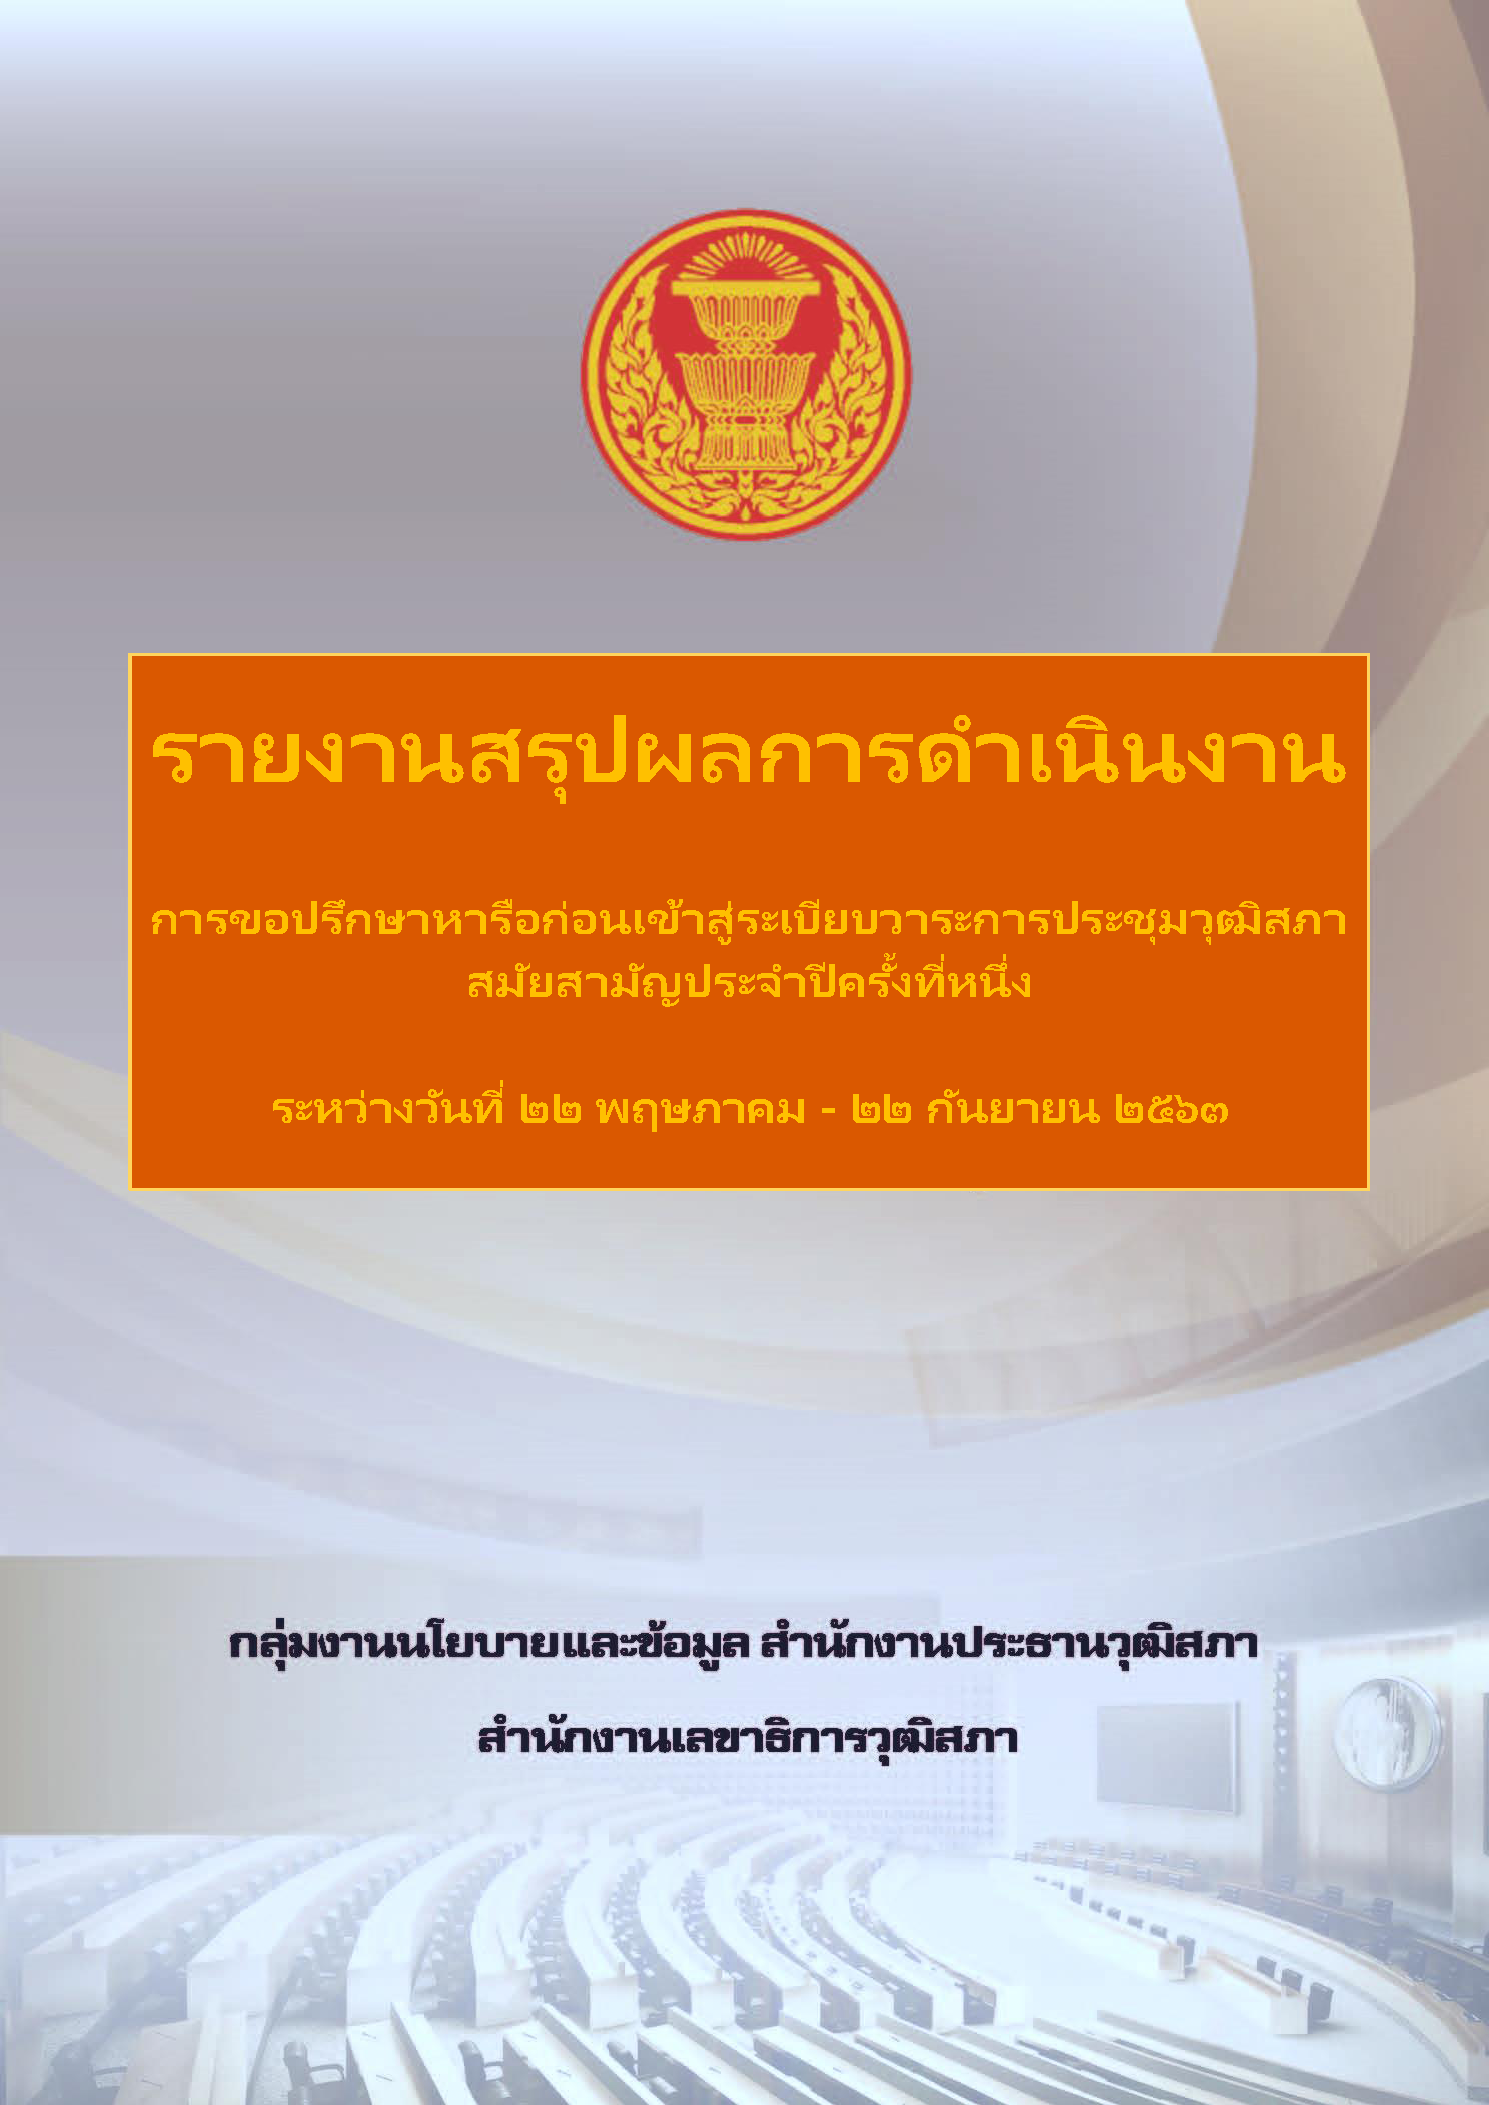 รายงานการขอปรึกษาหารือของสมาชิกวุฒิสภา สมัยสามัญครั้งที่ 1-22 พฤษภาคม 2563 - 22 กันยายน 2563